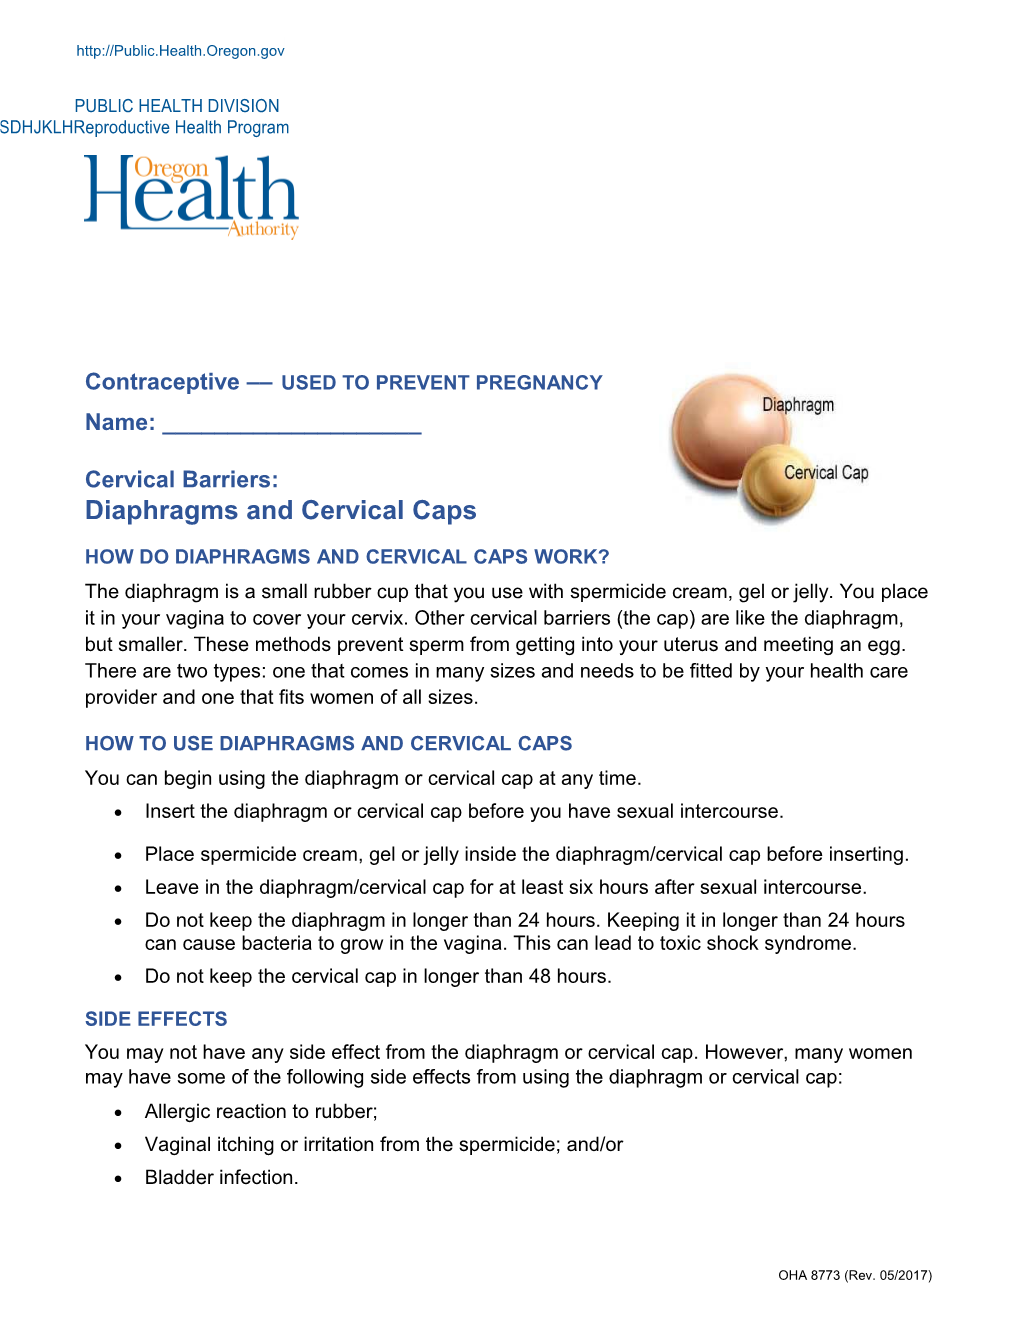 Cervical Barriers Medication Information Sheet